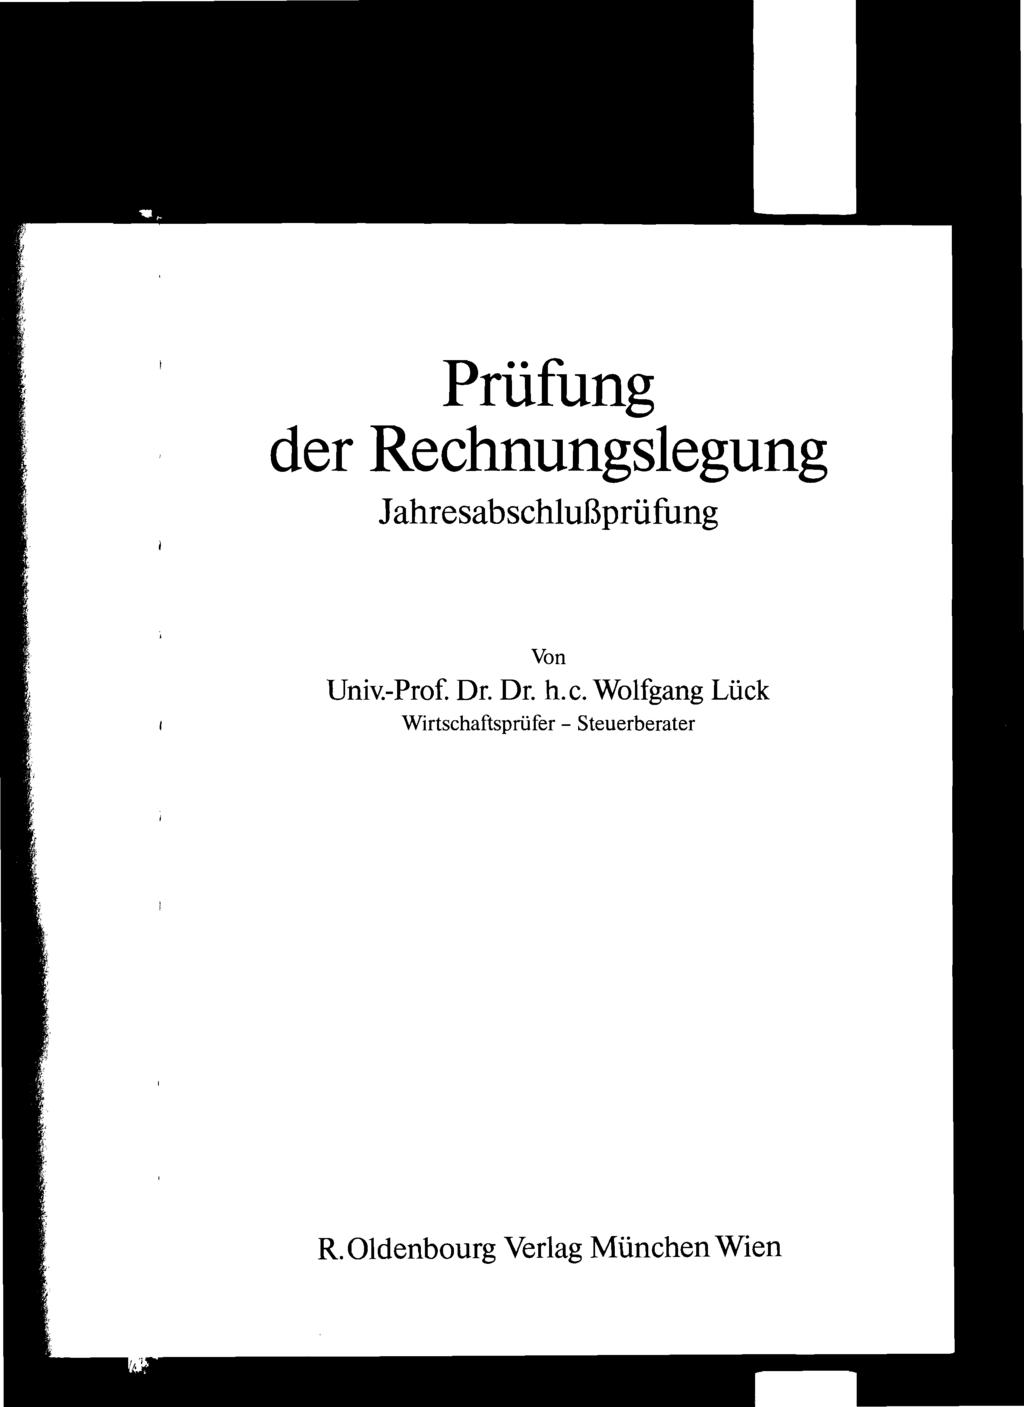 Prüfung der Rechnungslegung Jahresabschlußprüfung Von Univ.-Prof. Dr. Dr. h.c. Wolfgang Lück Wirtschaftsprüfer - Steuerberater R.